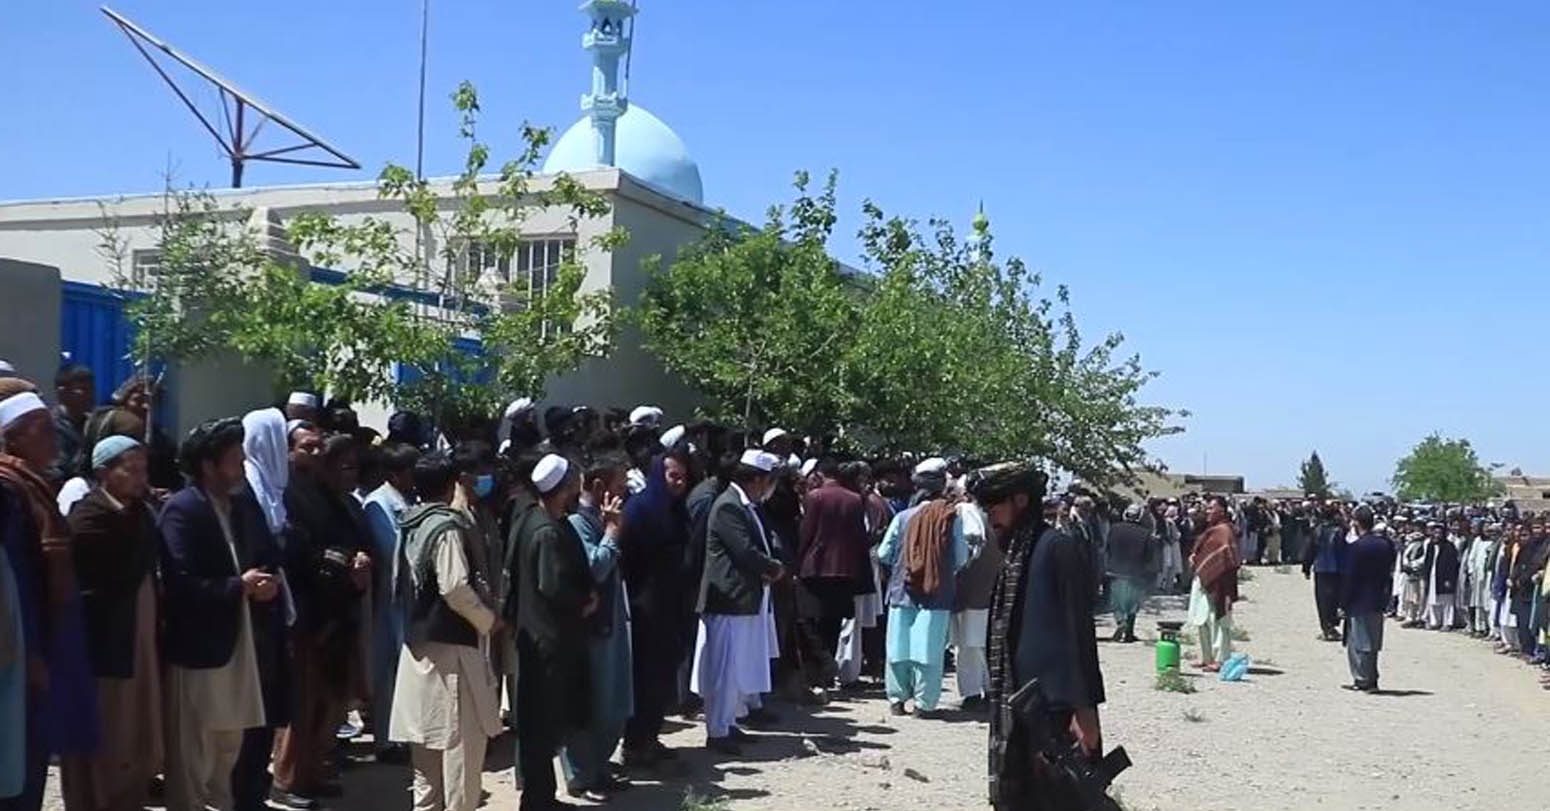 अफगानिस्तानको मस्जिदमा अन्धाधुन्ध गोली प्रहार, ६ जनाको मृत्यु